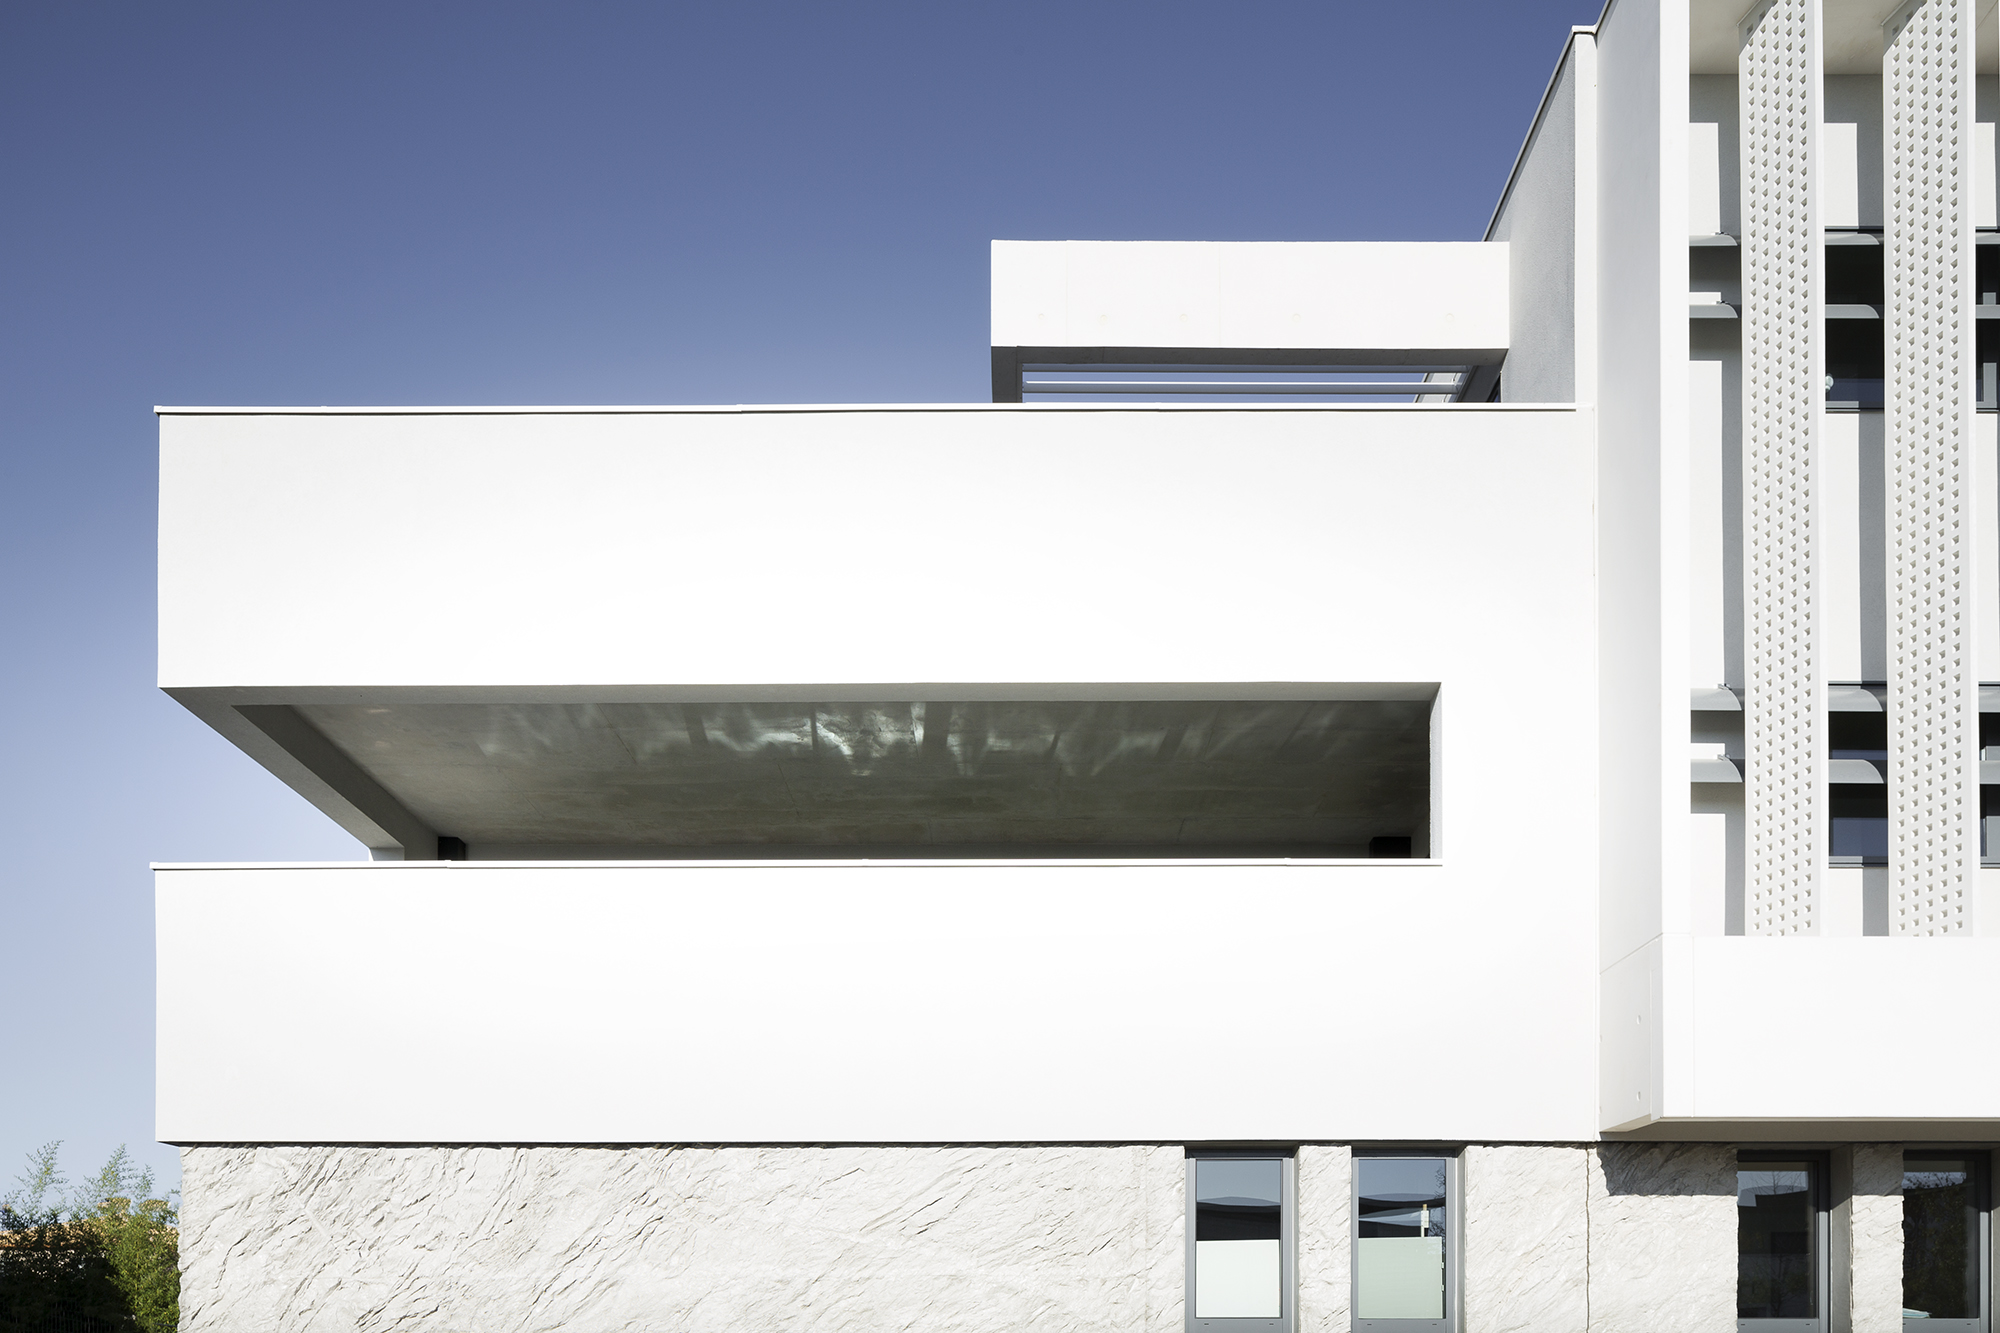 darver-castries-via-domitia-dominique-binet-mc-lucat-beton-bureaux-2016-a+architecture